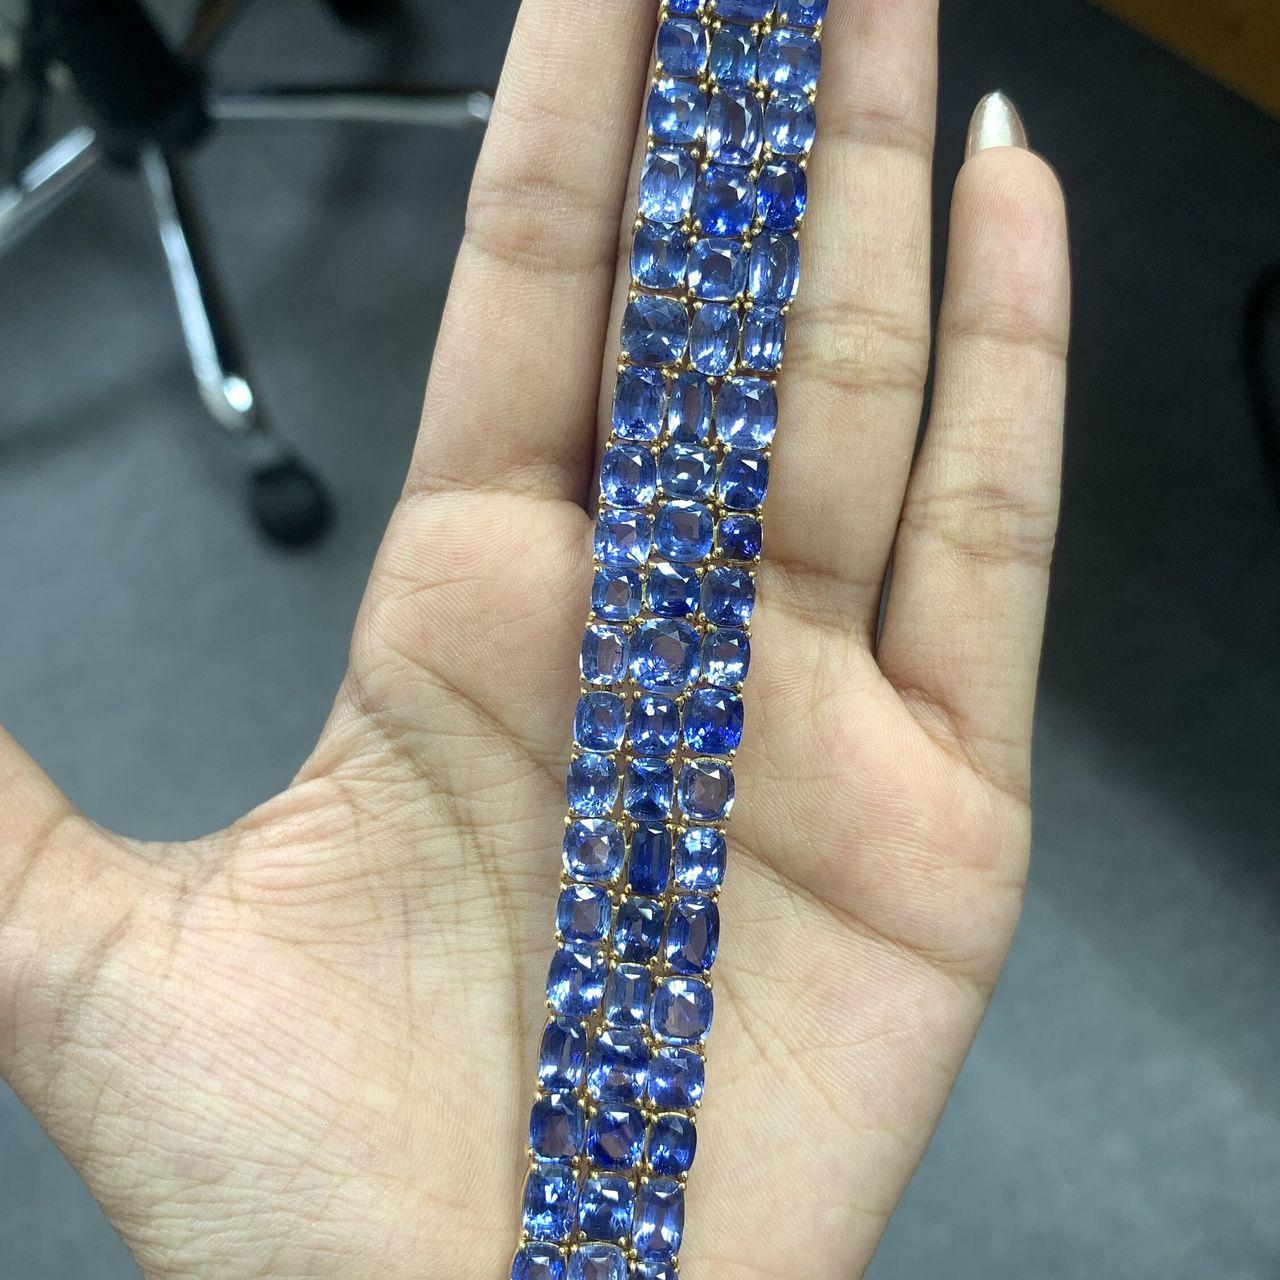 Ce bracelet est orné de 66,4 carats de saphirs bleus de Ceylan exquis, de forme coussin, provenant du Sri Lanka. Rehaussés par un traitement thermique doux, ces saphirs brillent d'une allure captivante. Le bracelet lui-même est un chef-d'œuvre en or